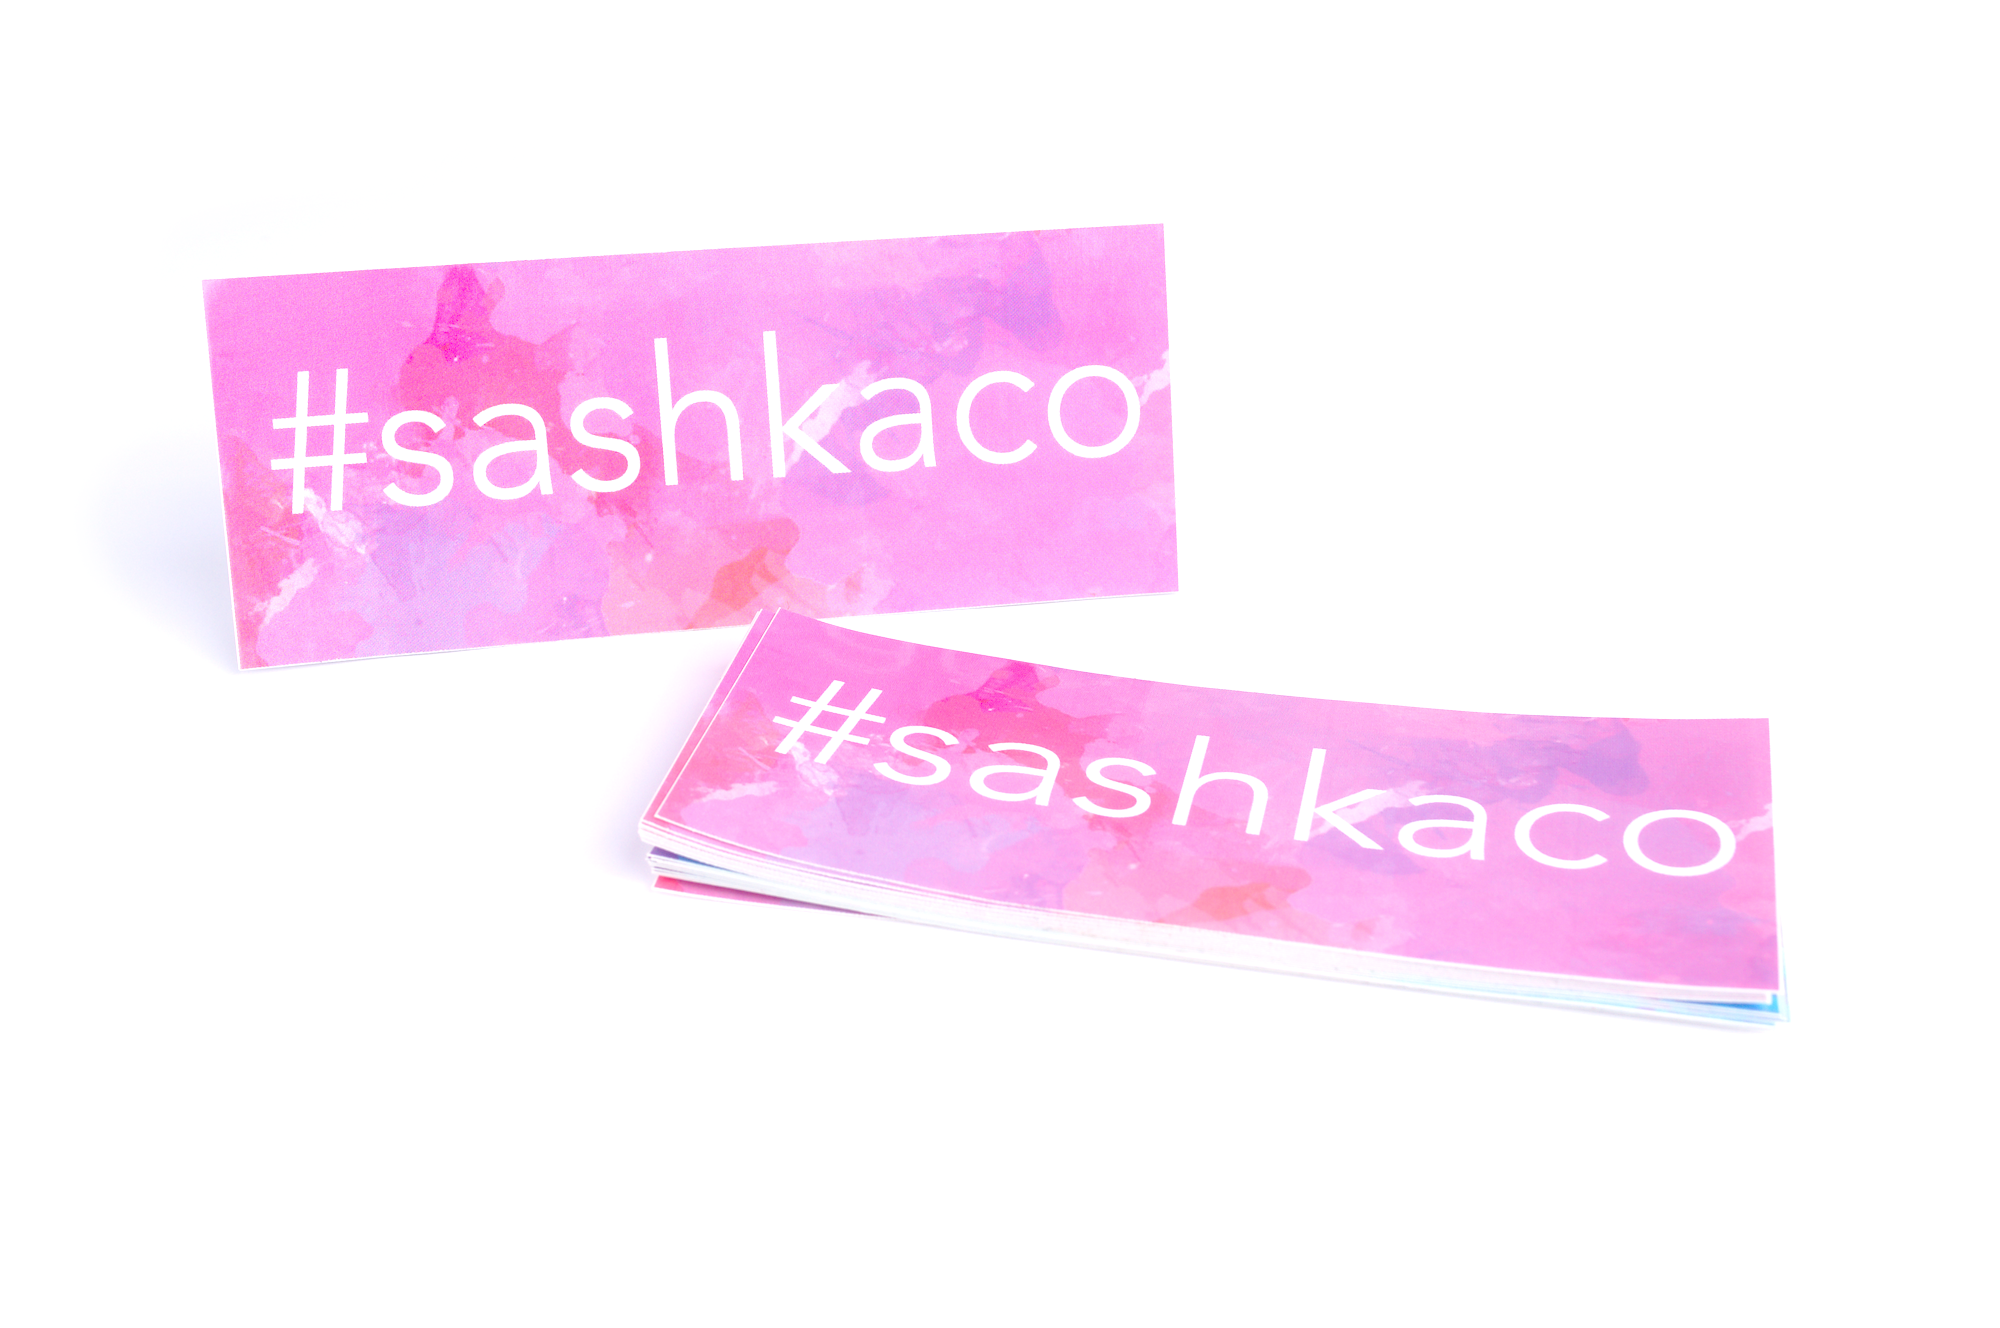 Sashka Co. Original Bracelet Baby Blue / Pink / Rose Gold Self Love Bracelet